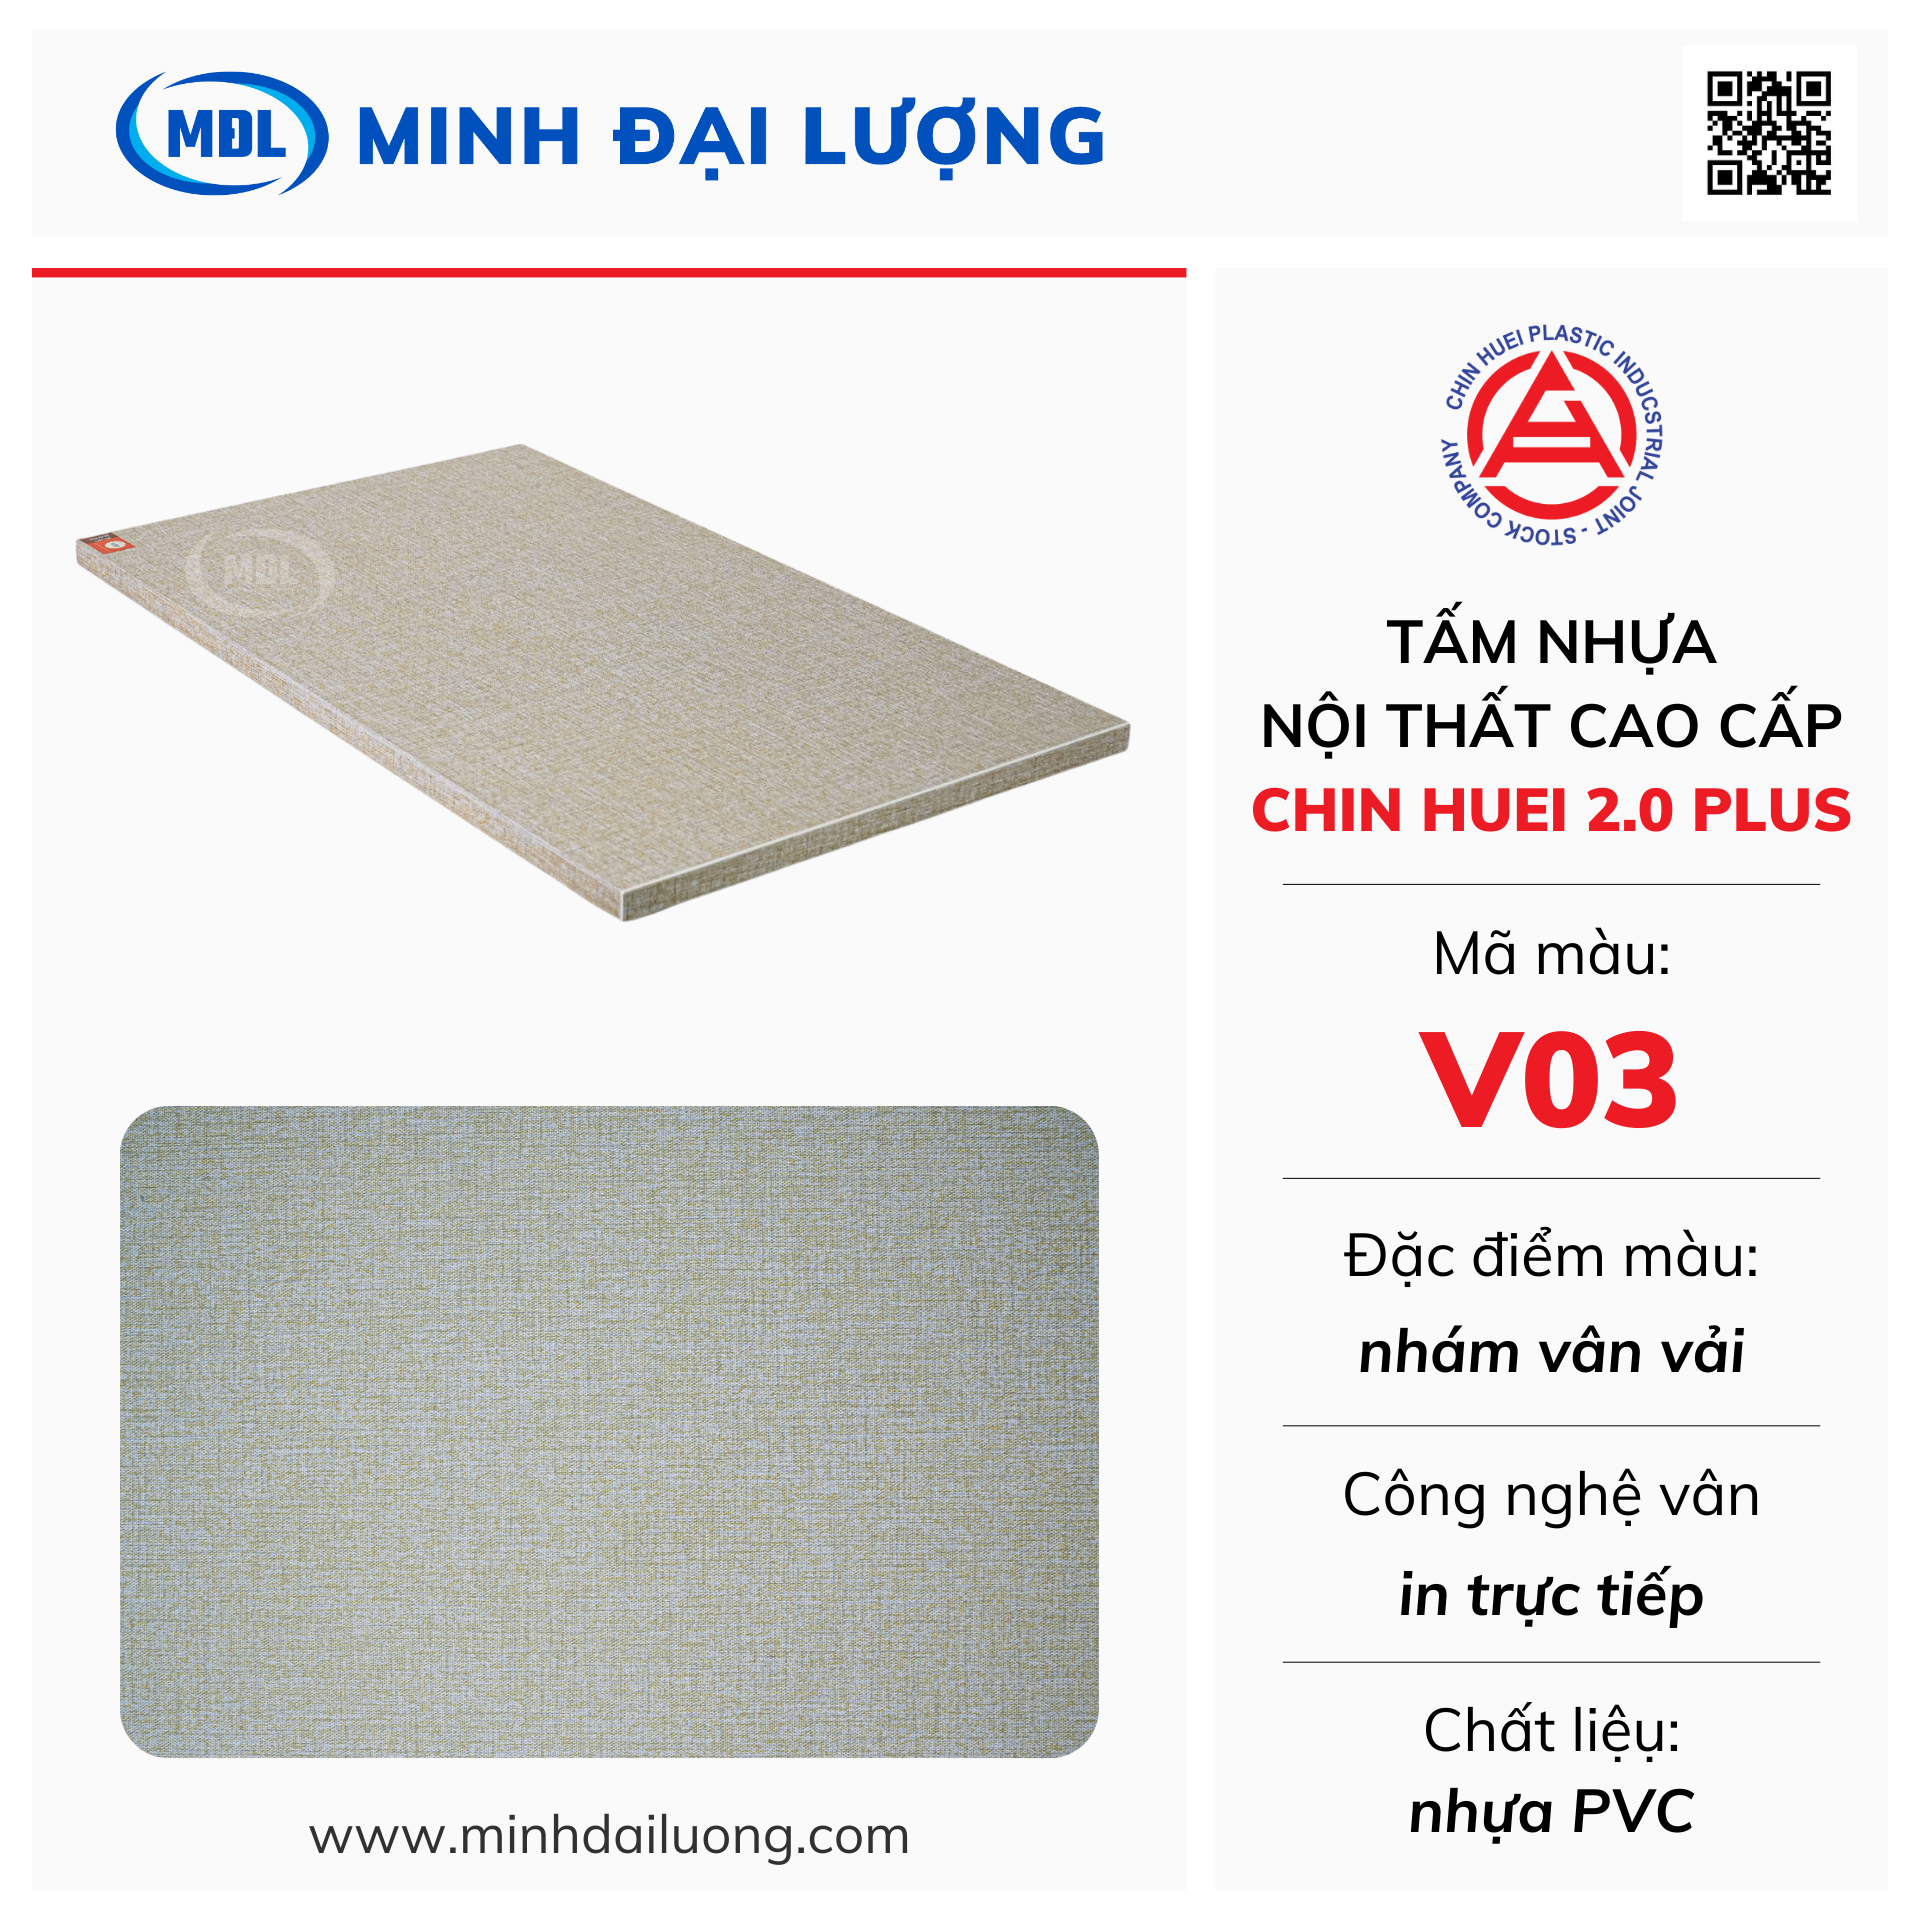 Tấm nhựa nội thất cao cấp Chin Huei 2.0 Plus màu V03